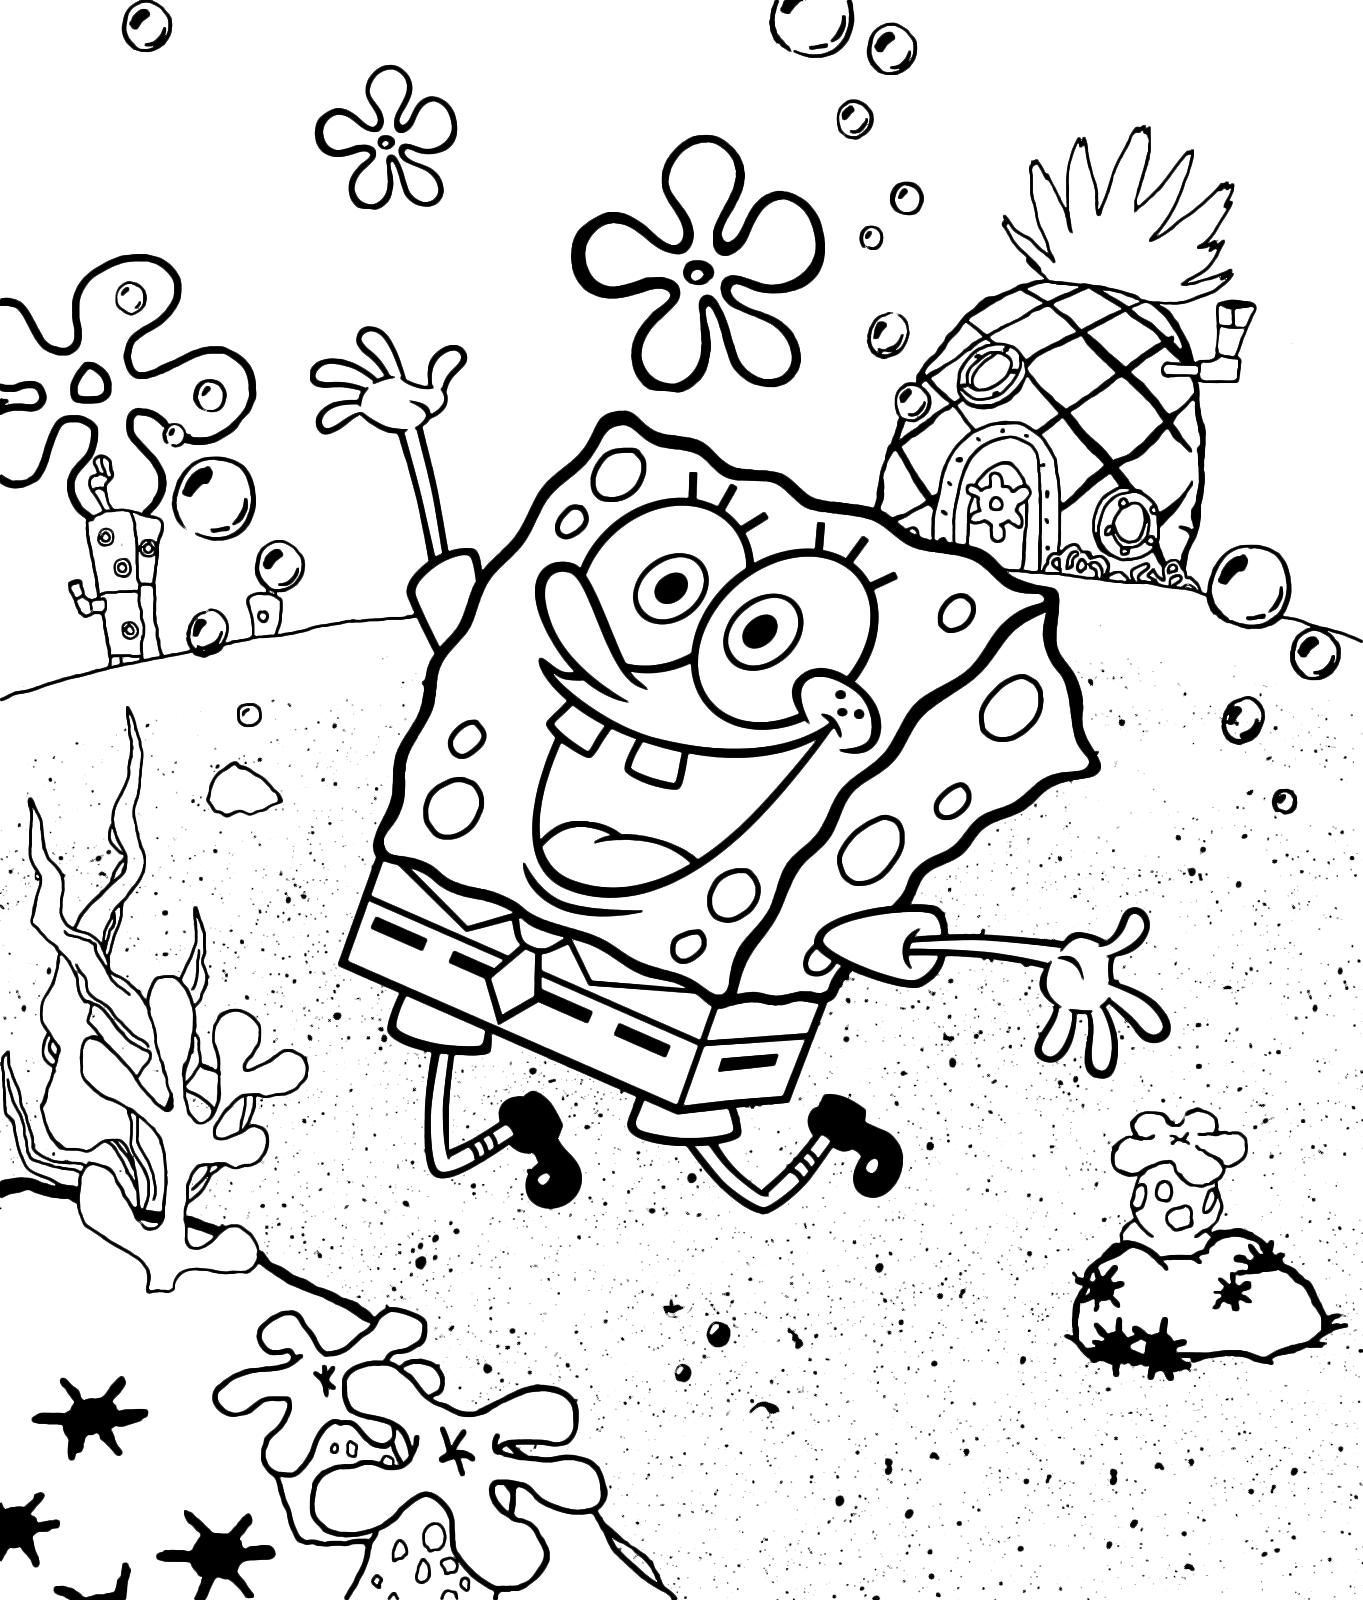 SpongeBob - SpongeBob is happy undersea